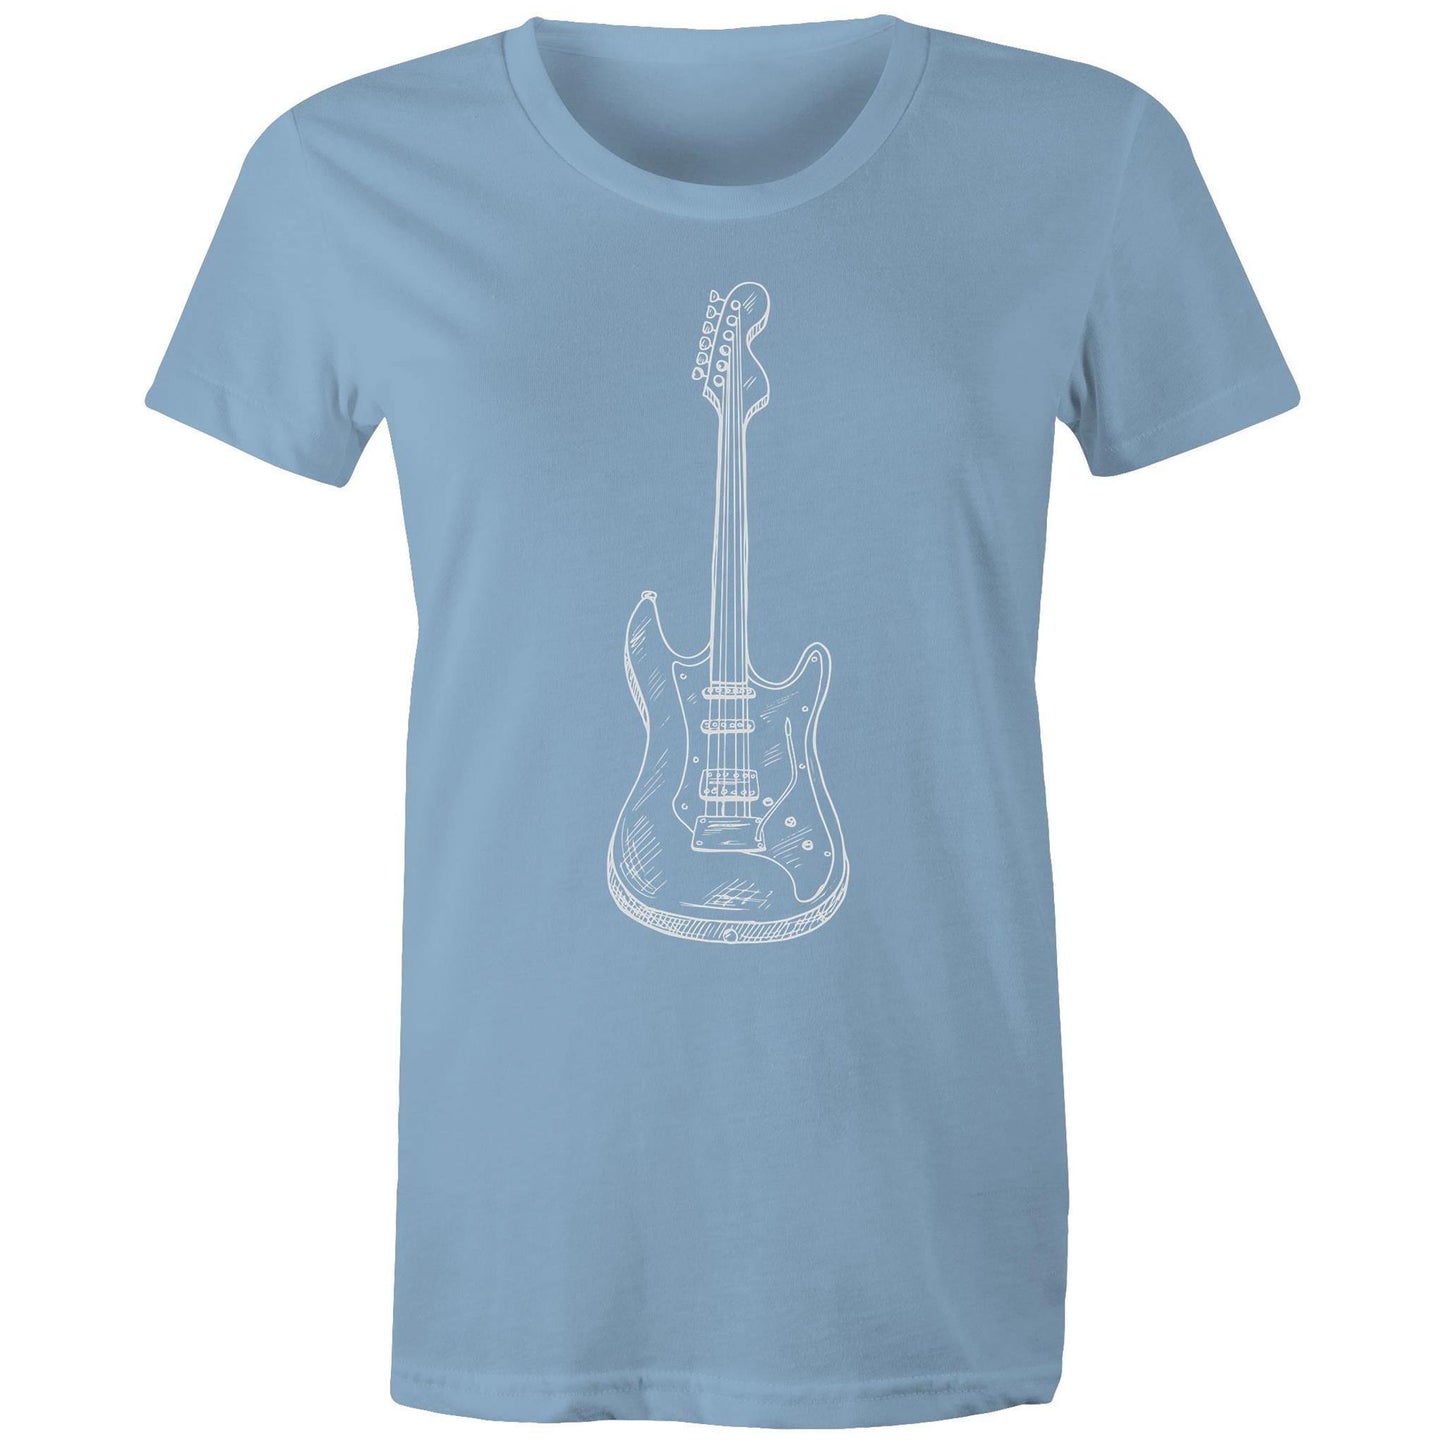 Guitar - Women's T-shirt Carolina Blue Womens T-shirt Music Womens